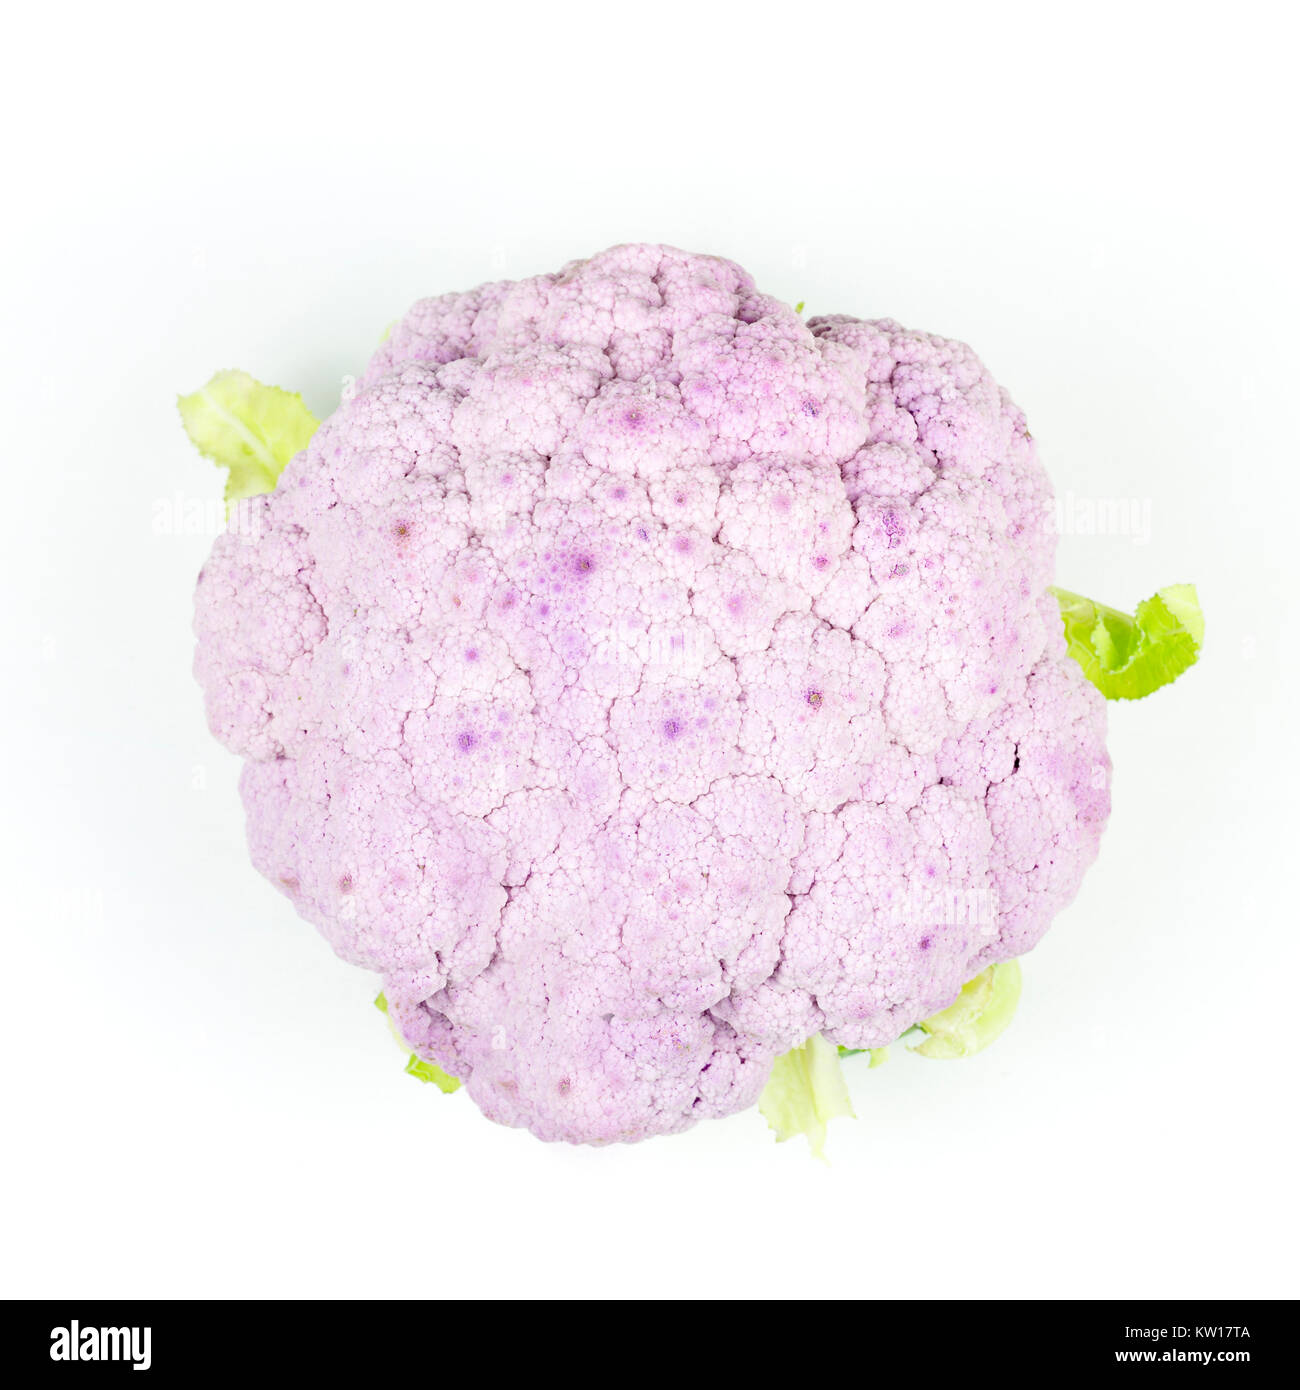 Sicilian purple broccoli on a white background Stock Photo